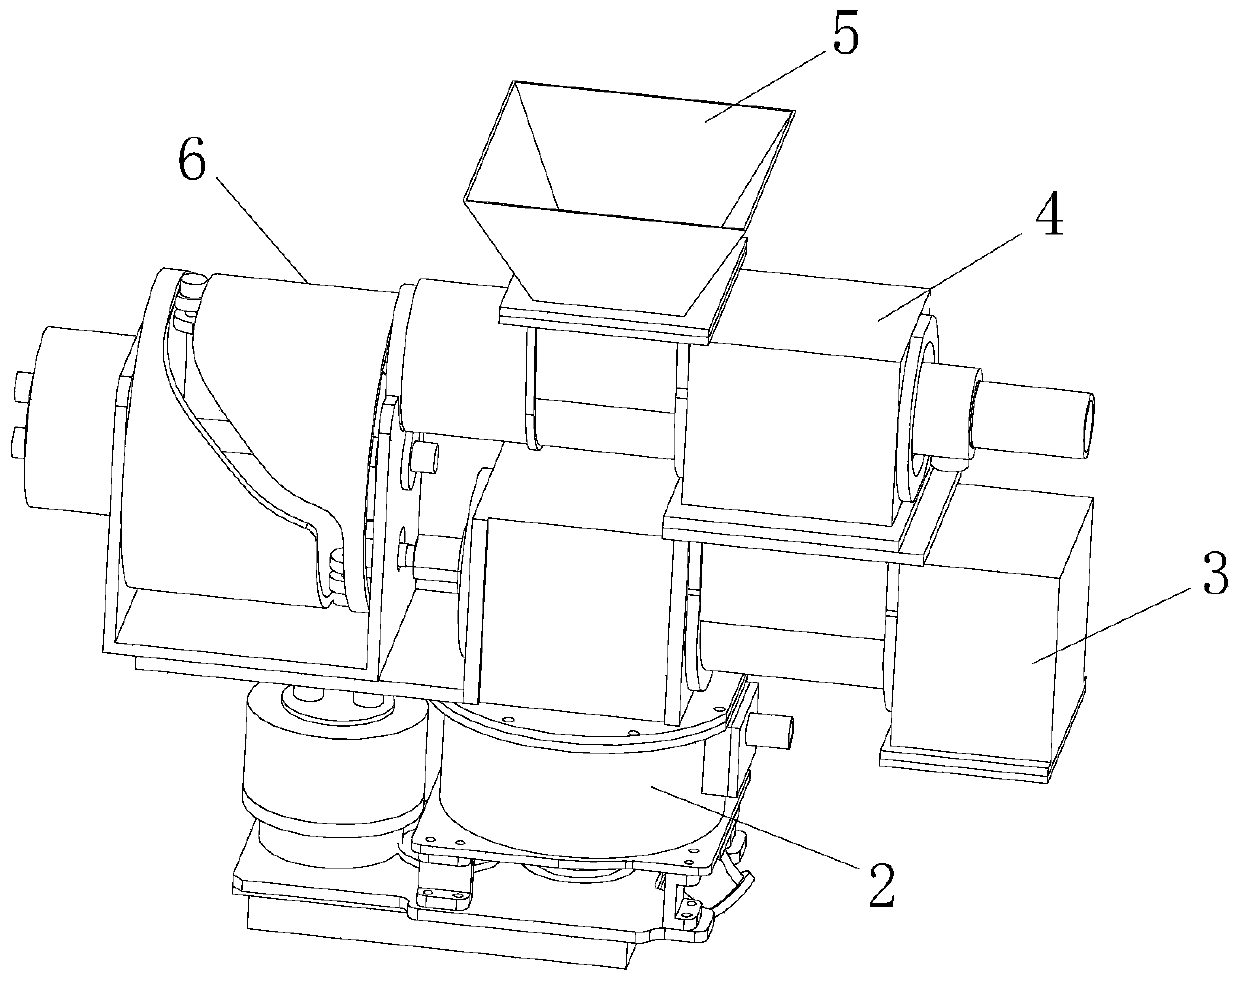 Double-piston type pneumatic conveyer